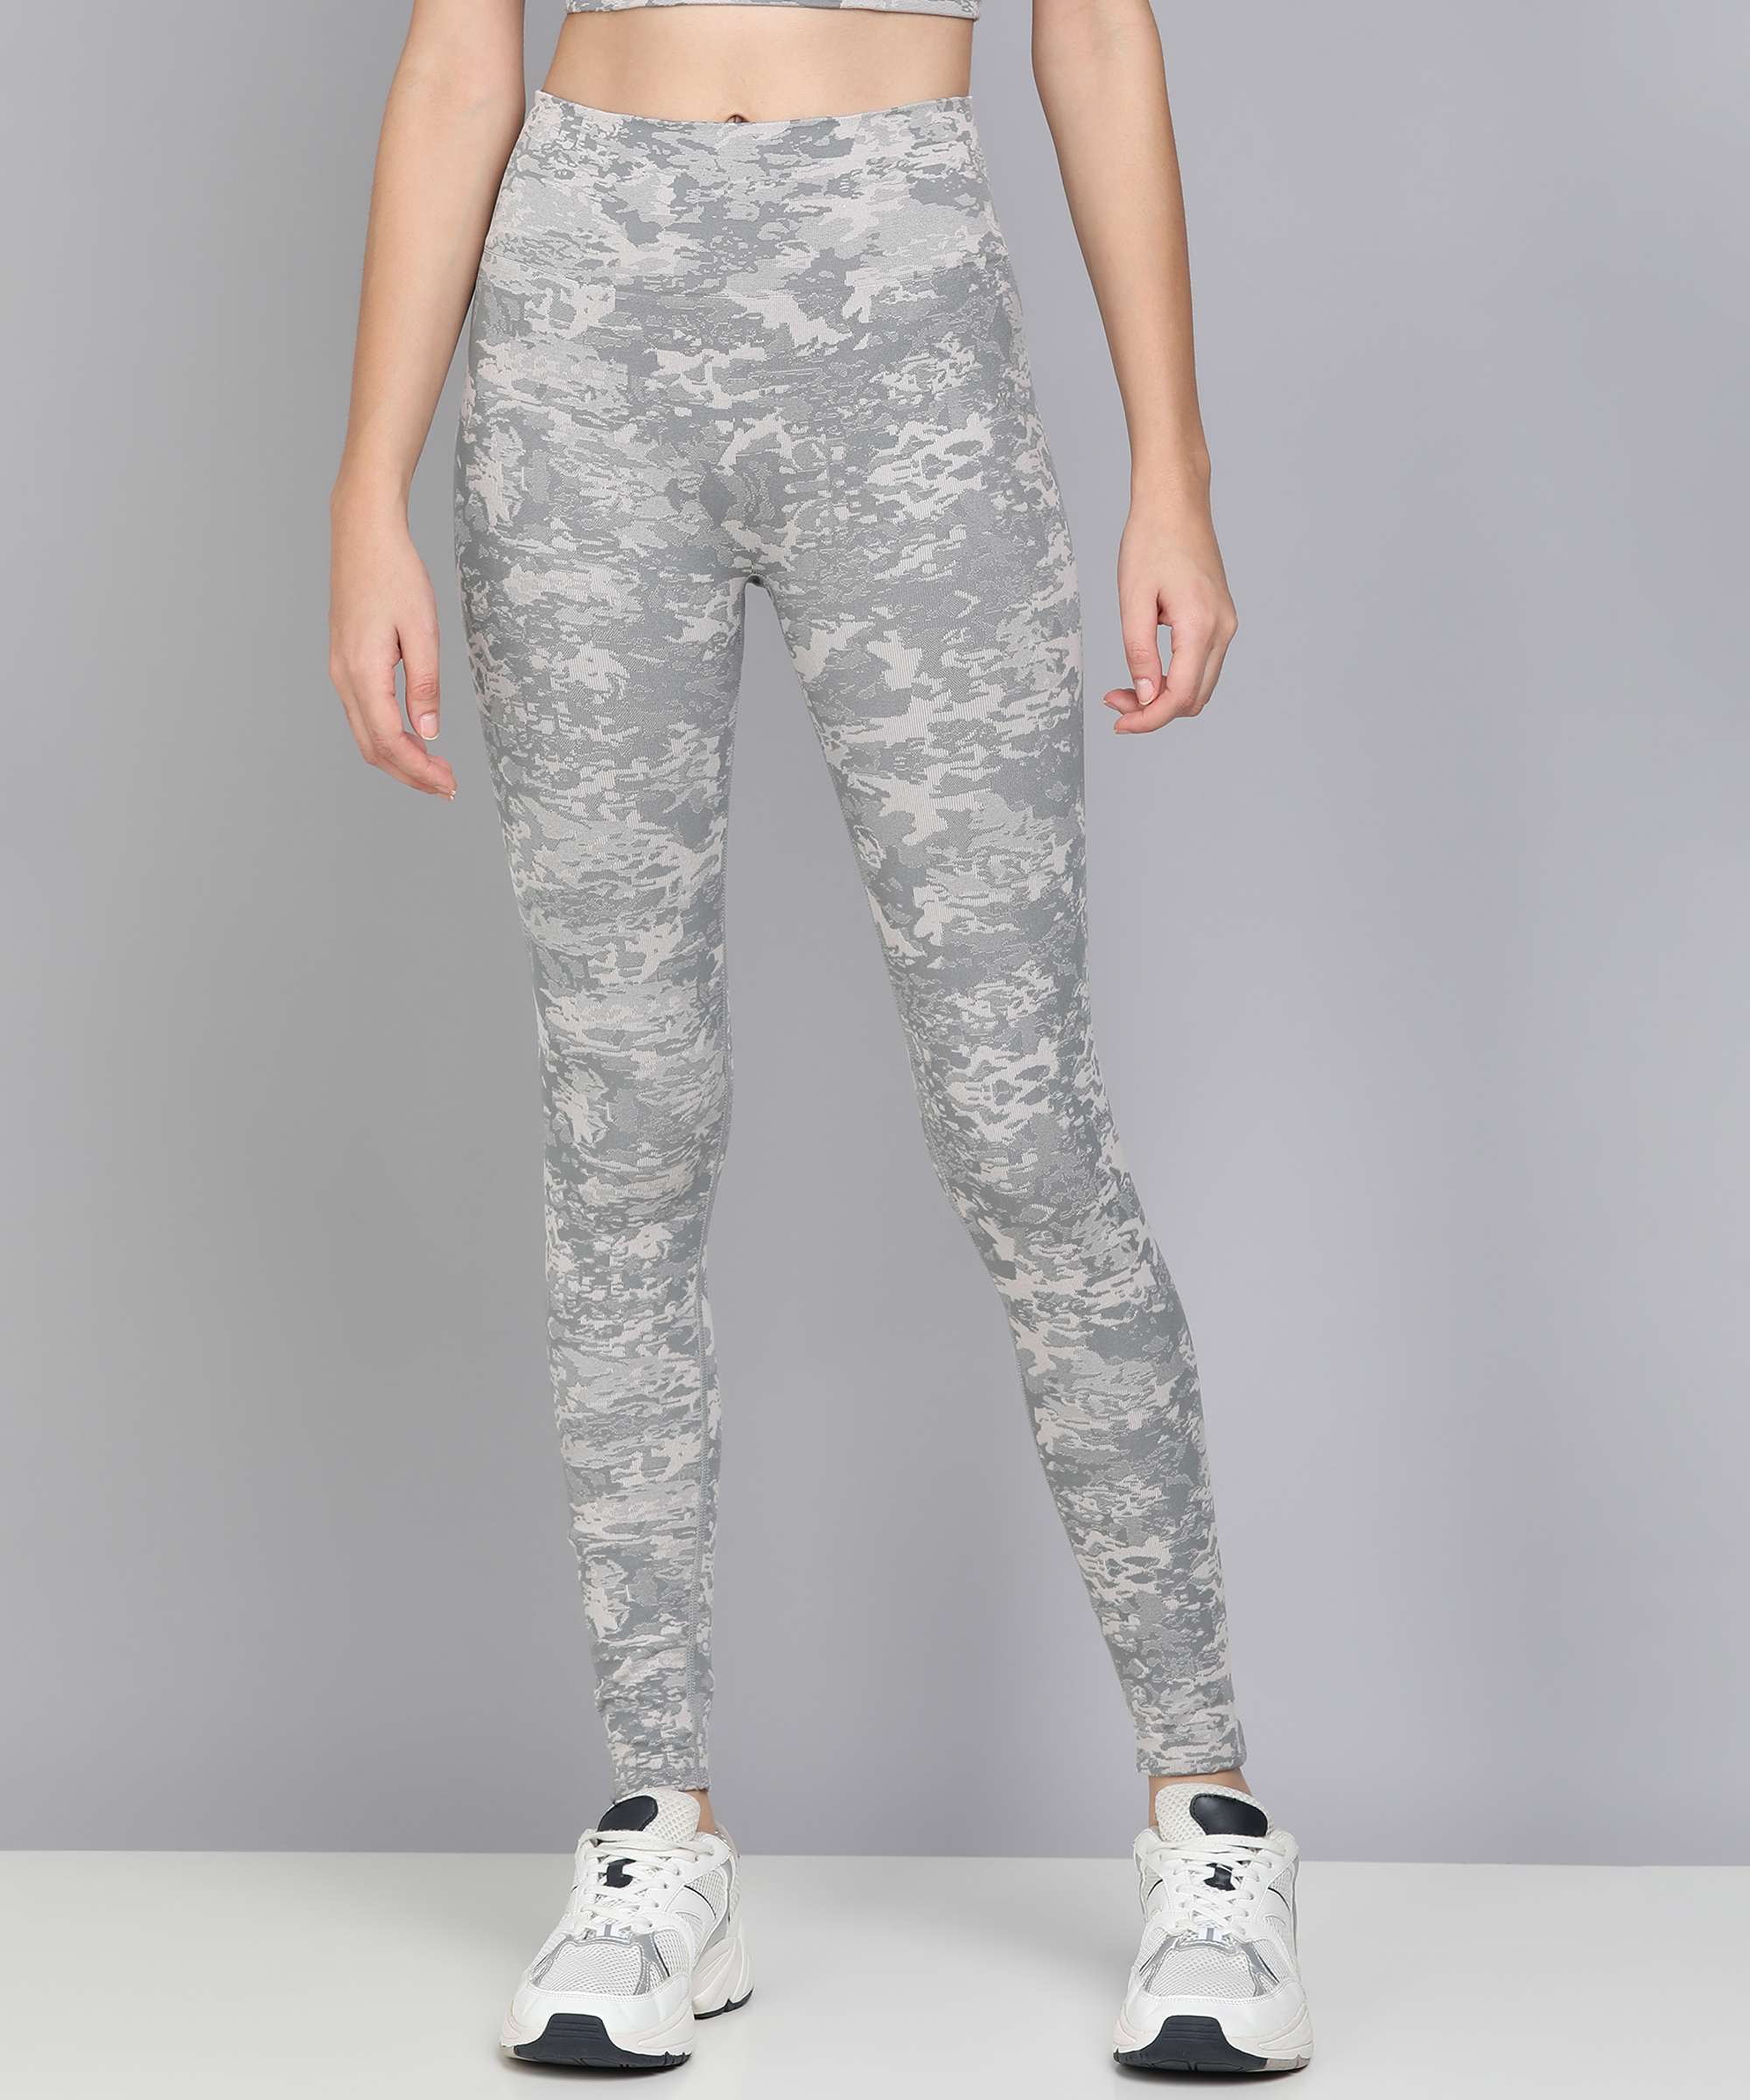 camo lululemon leggings, white air force 1's